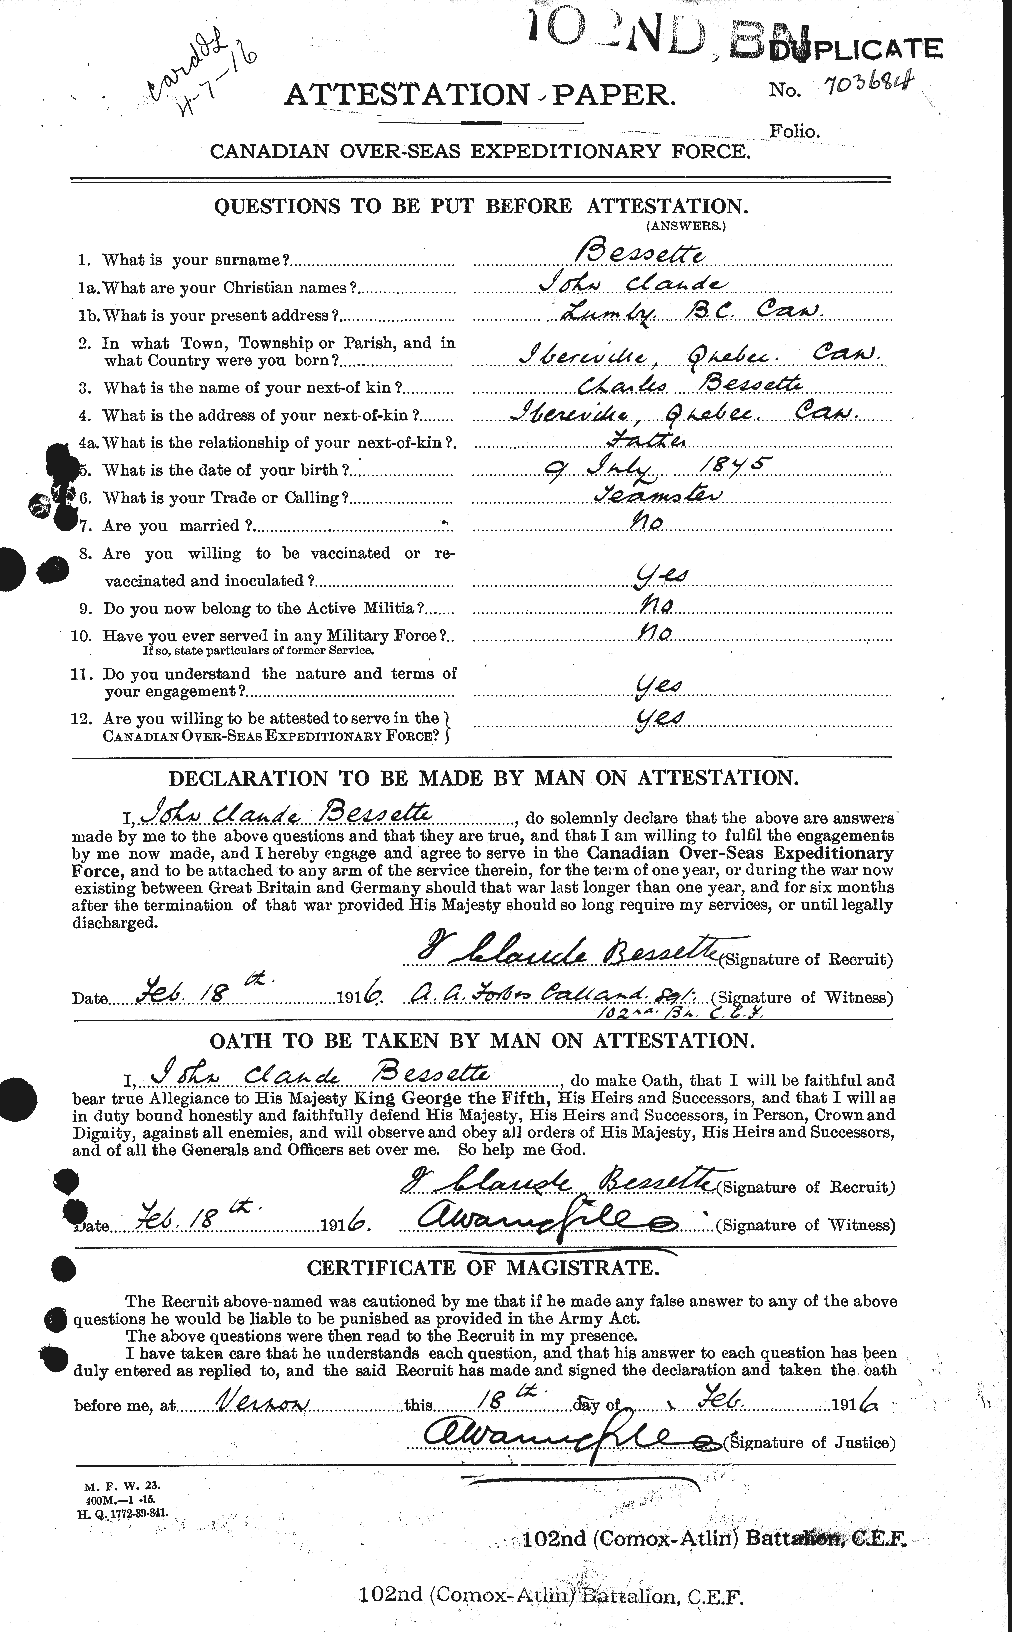 Dossiers du Personnel de la Première Guerre mondiale - CEC 240173a